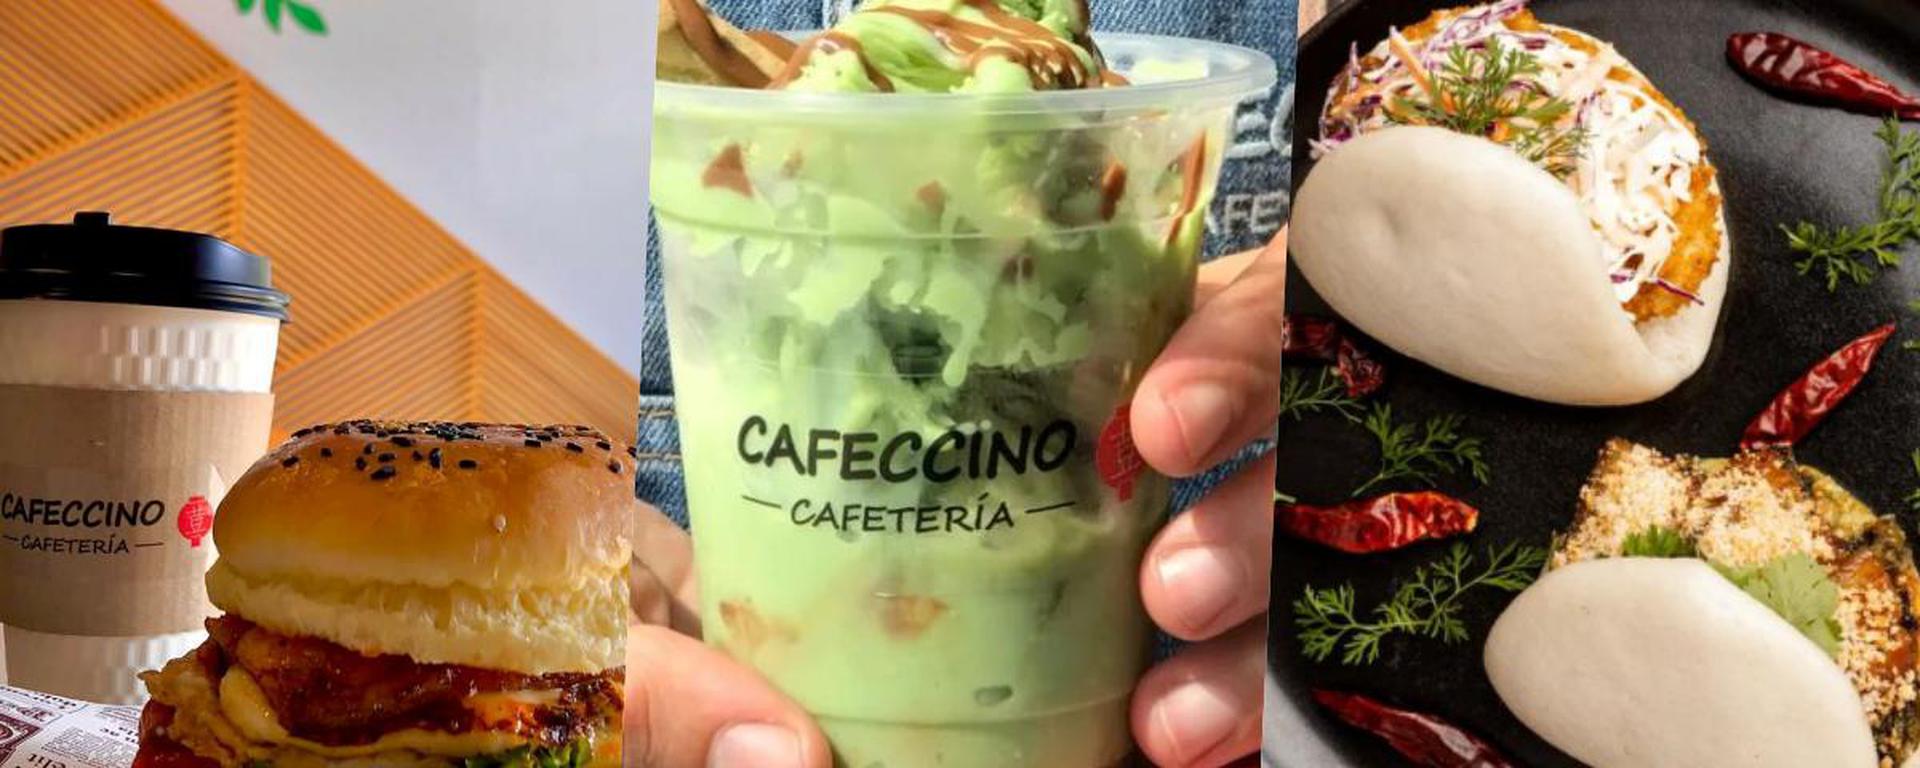 ¿Una cafetería de estilo taiwanés en San Miguel? Así es la divertida propuesta de Cafeccino 